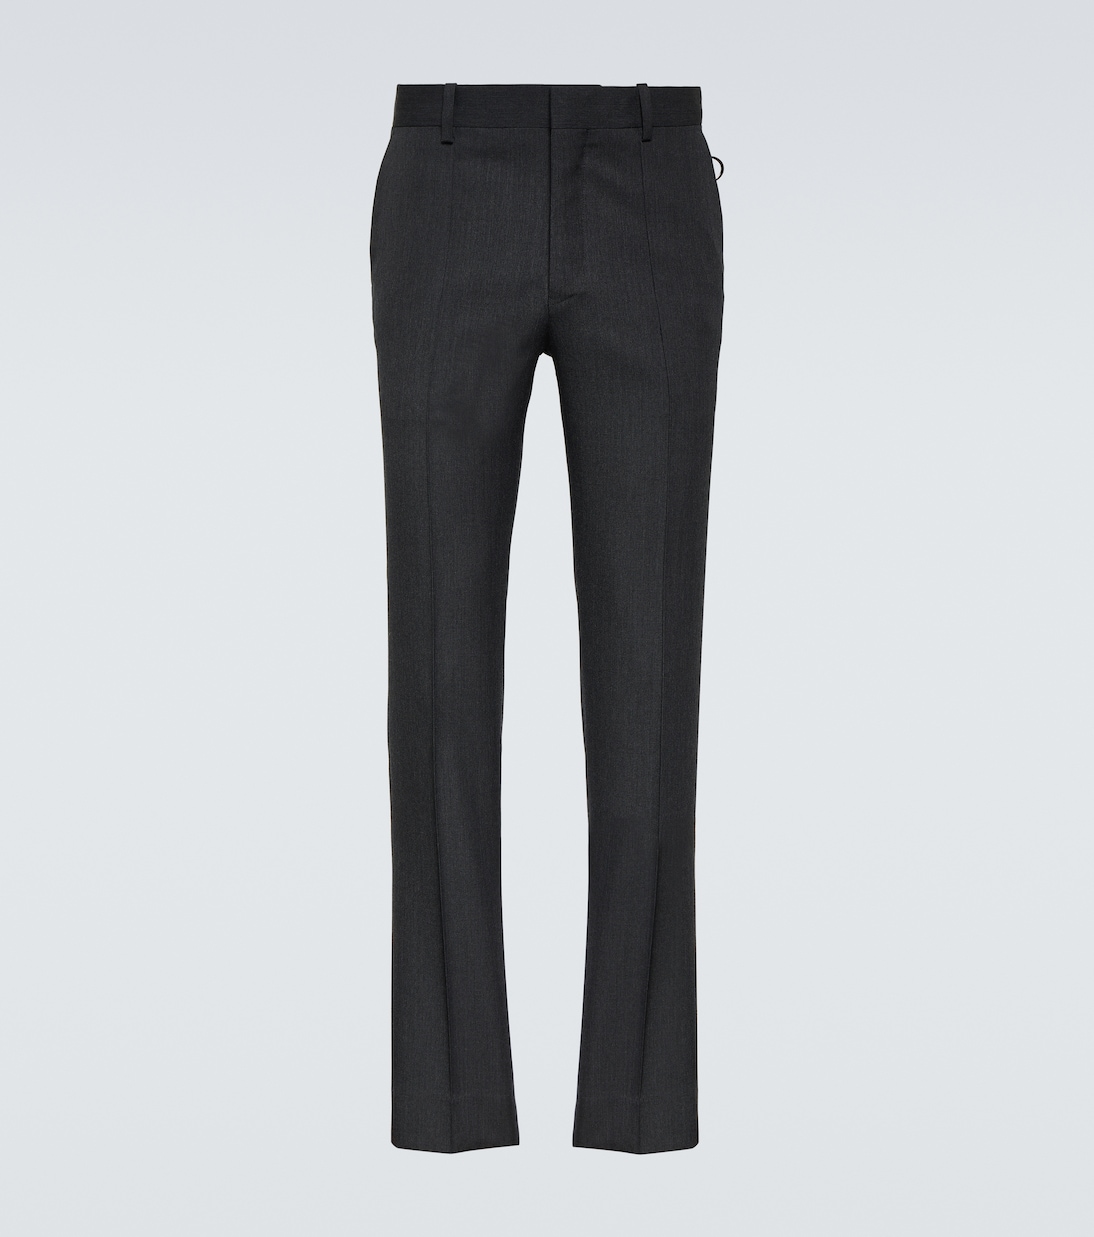 Узкие брюки из шерсти с низкой посадкой Undercover, серый узкие джинсы с низкой посадкой серый